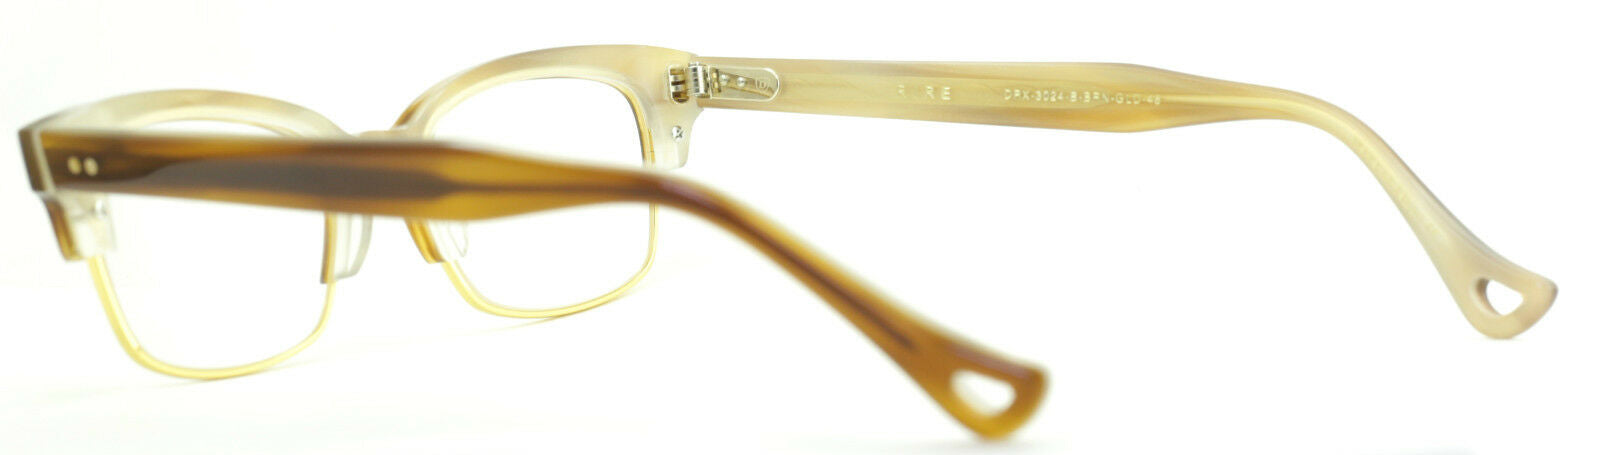 DITA RIRE DRX-3024 B BRN FRAMES NEW RX Optical Glasses Eyewear Eyeglasses - BNIB